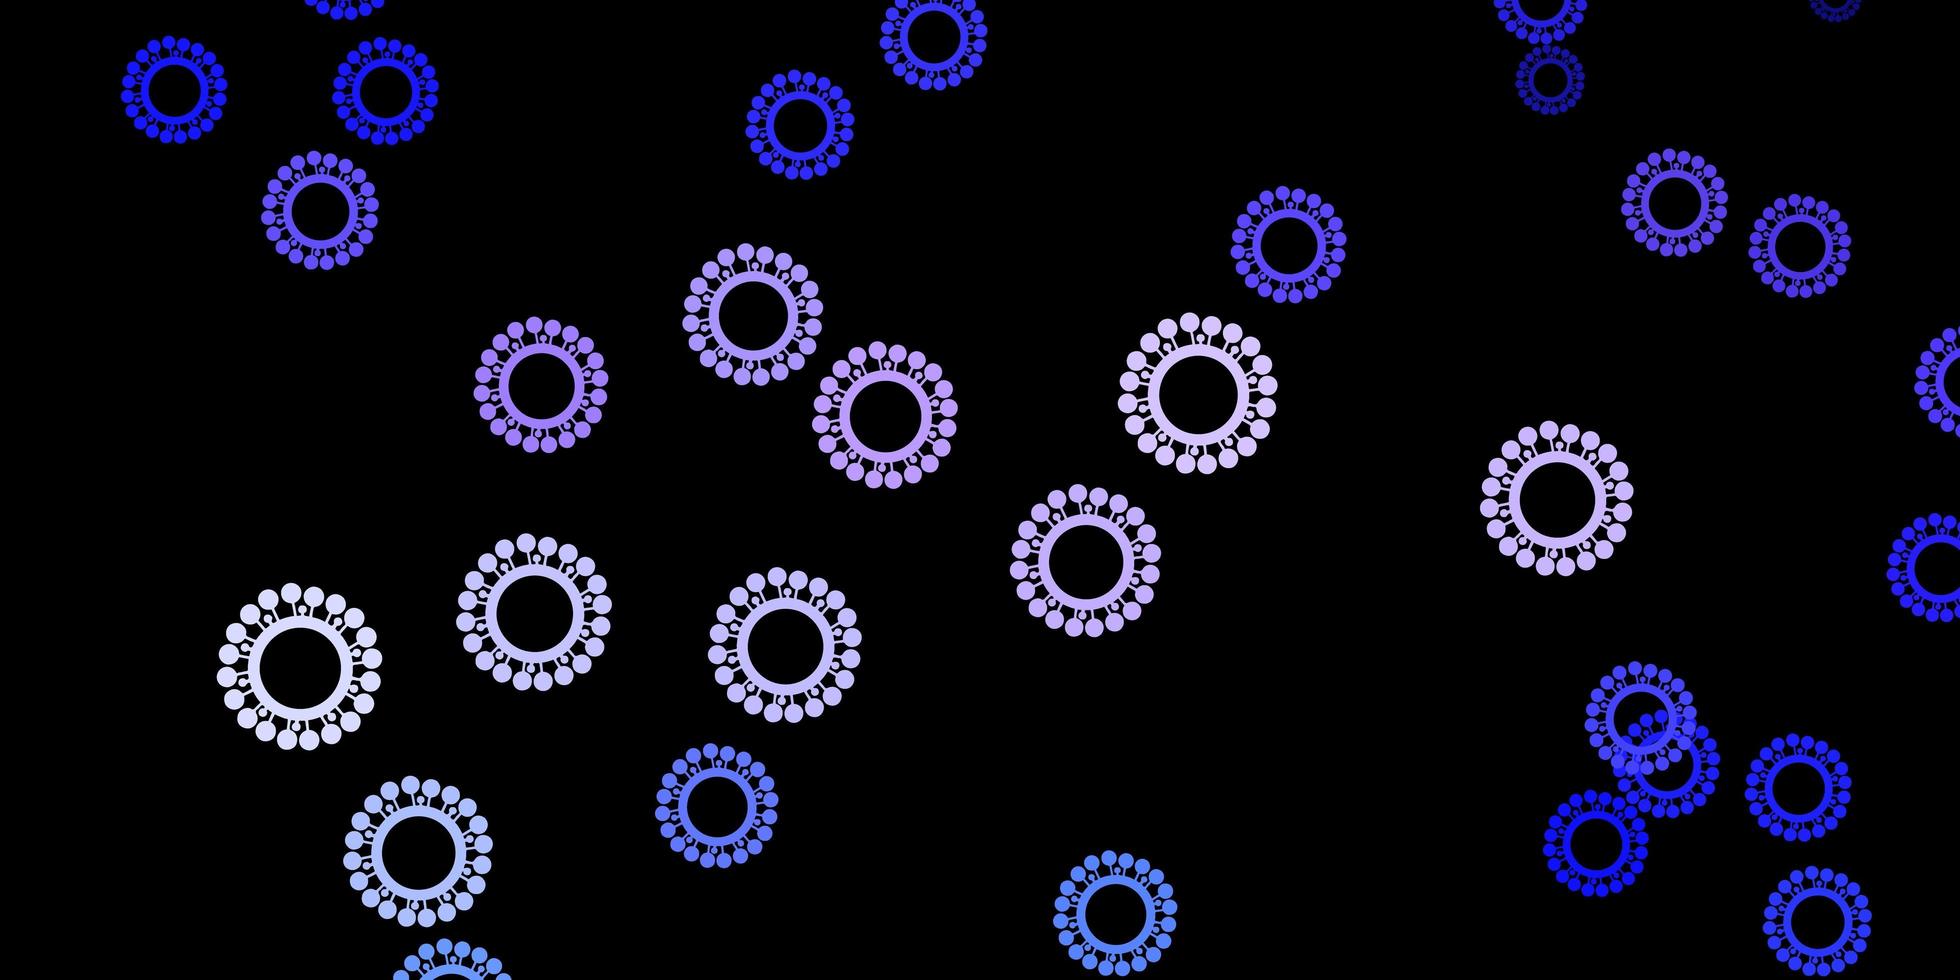 sfondo vettoriale viola scuro con simboli di virus.